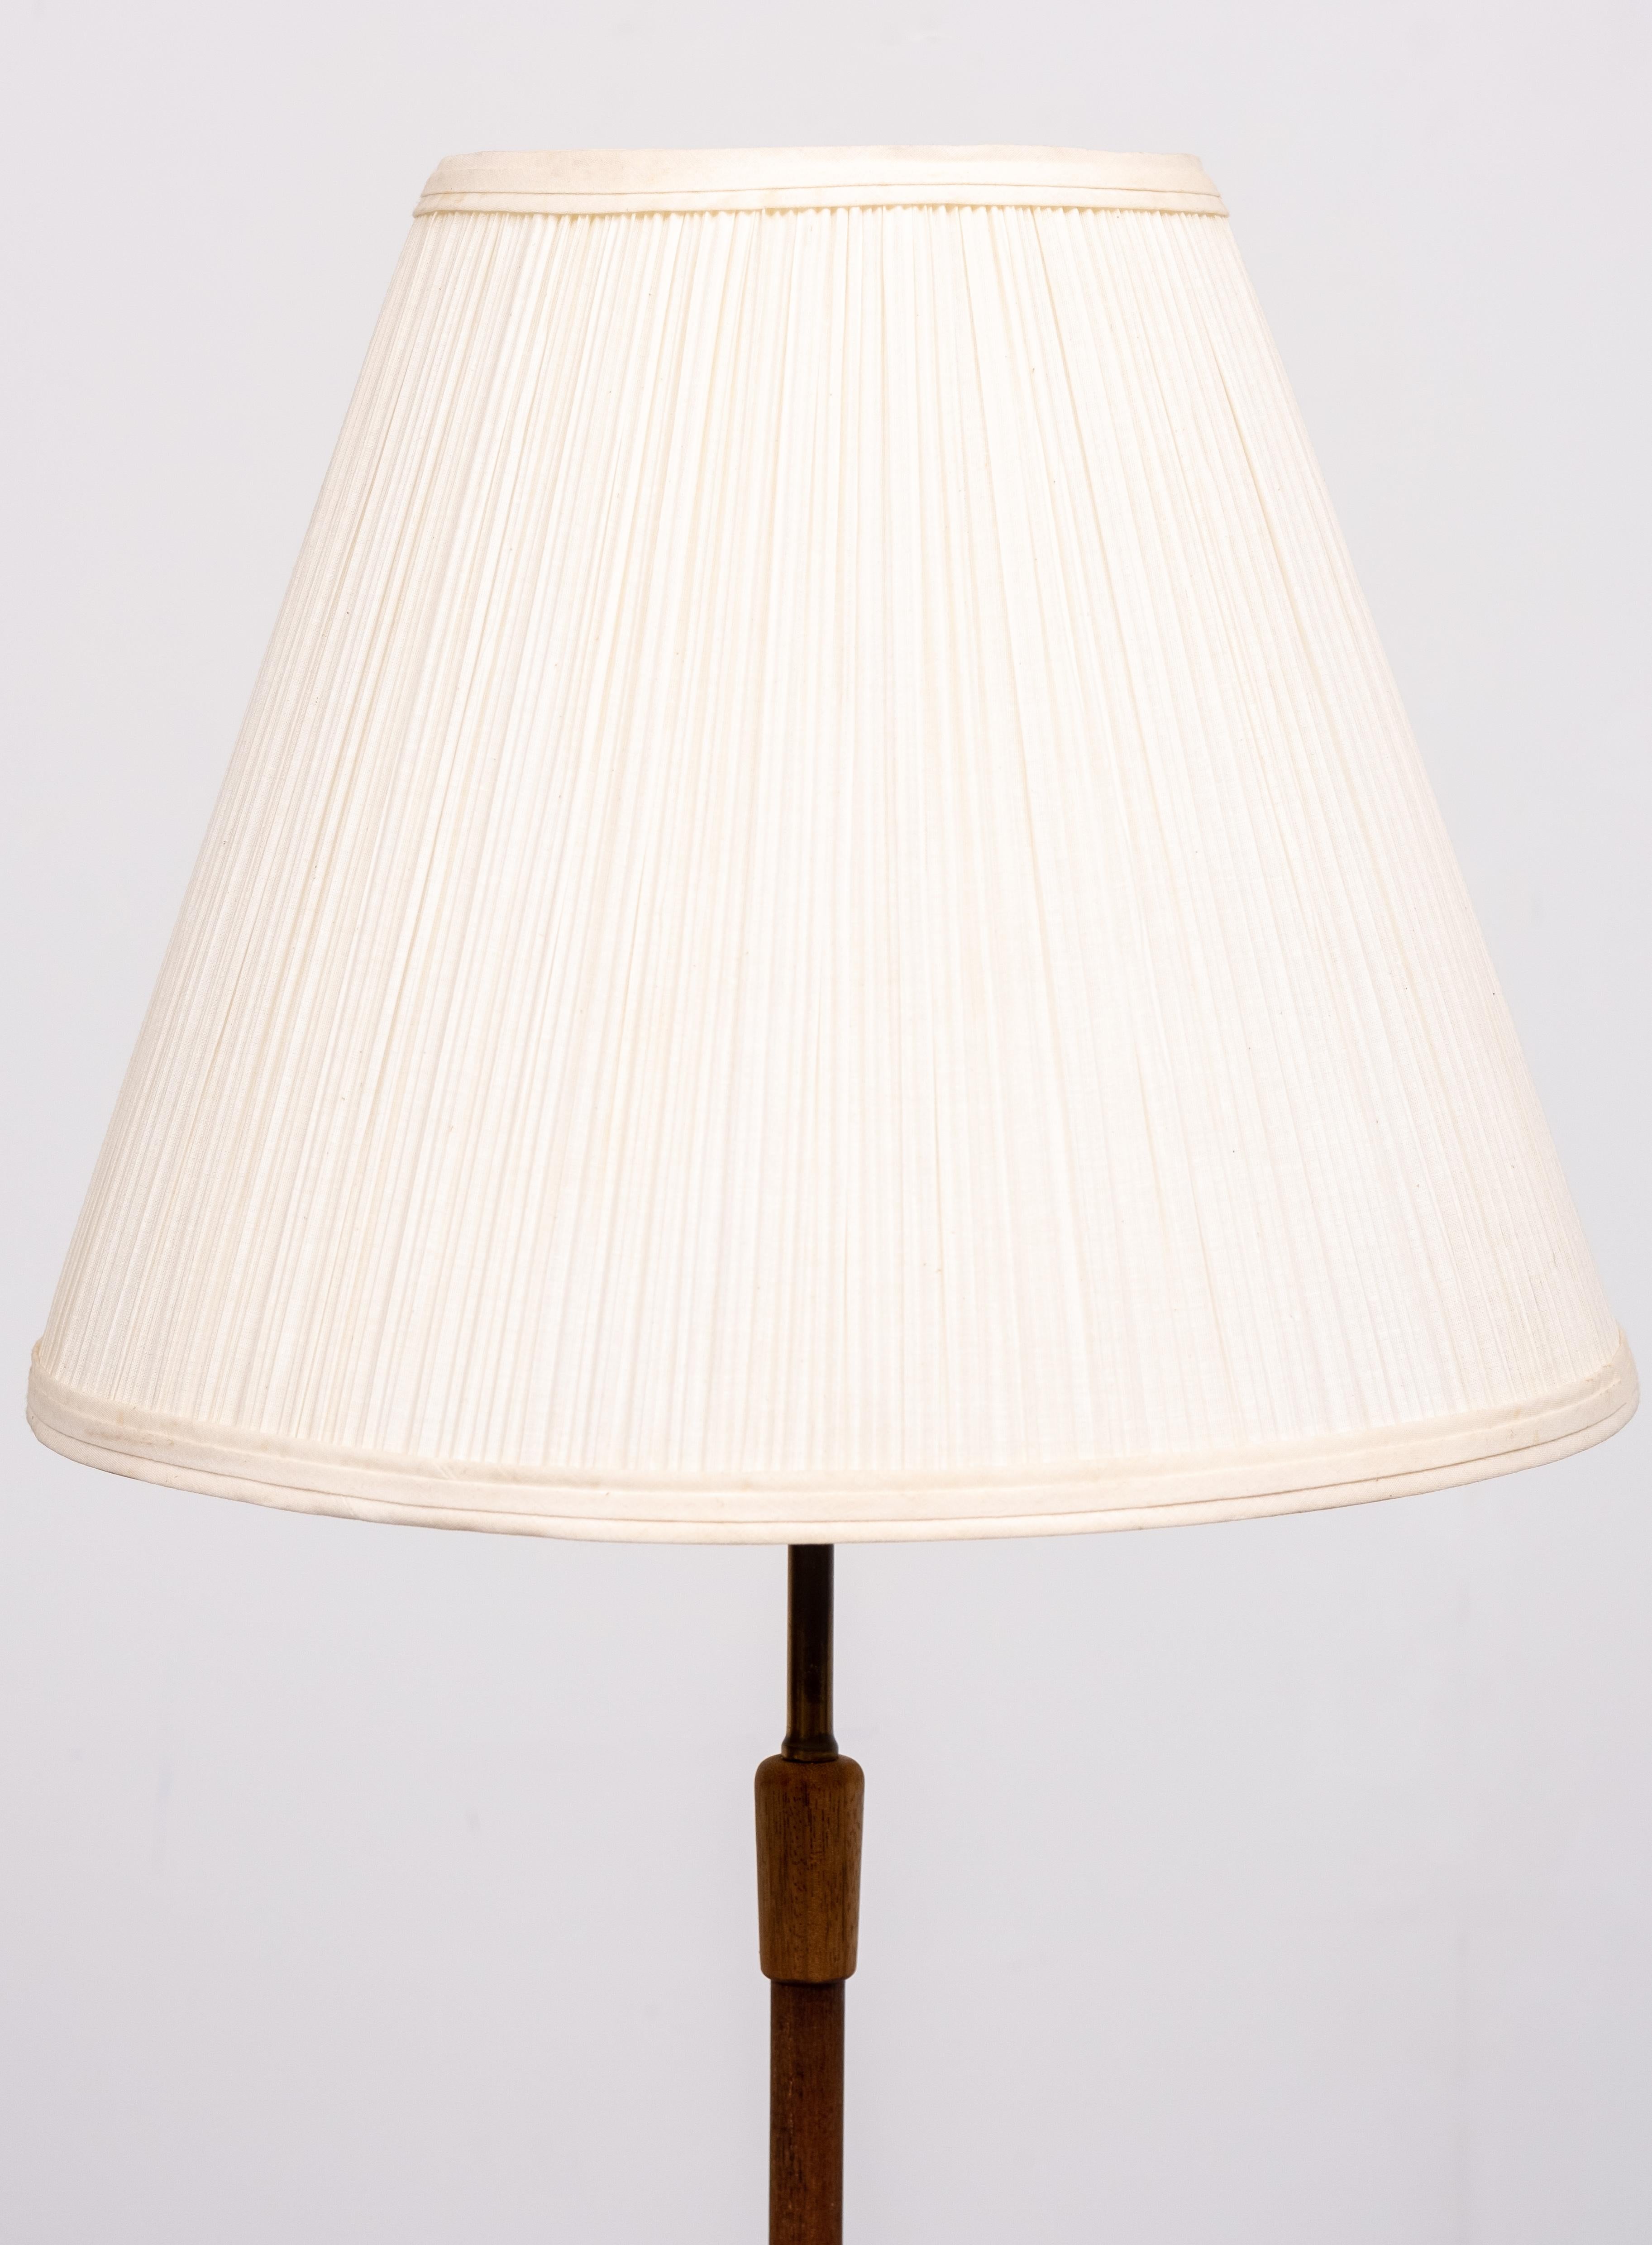 German Temde Teak Floor Lamp, 1960s For Sale